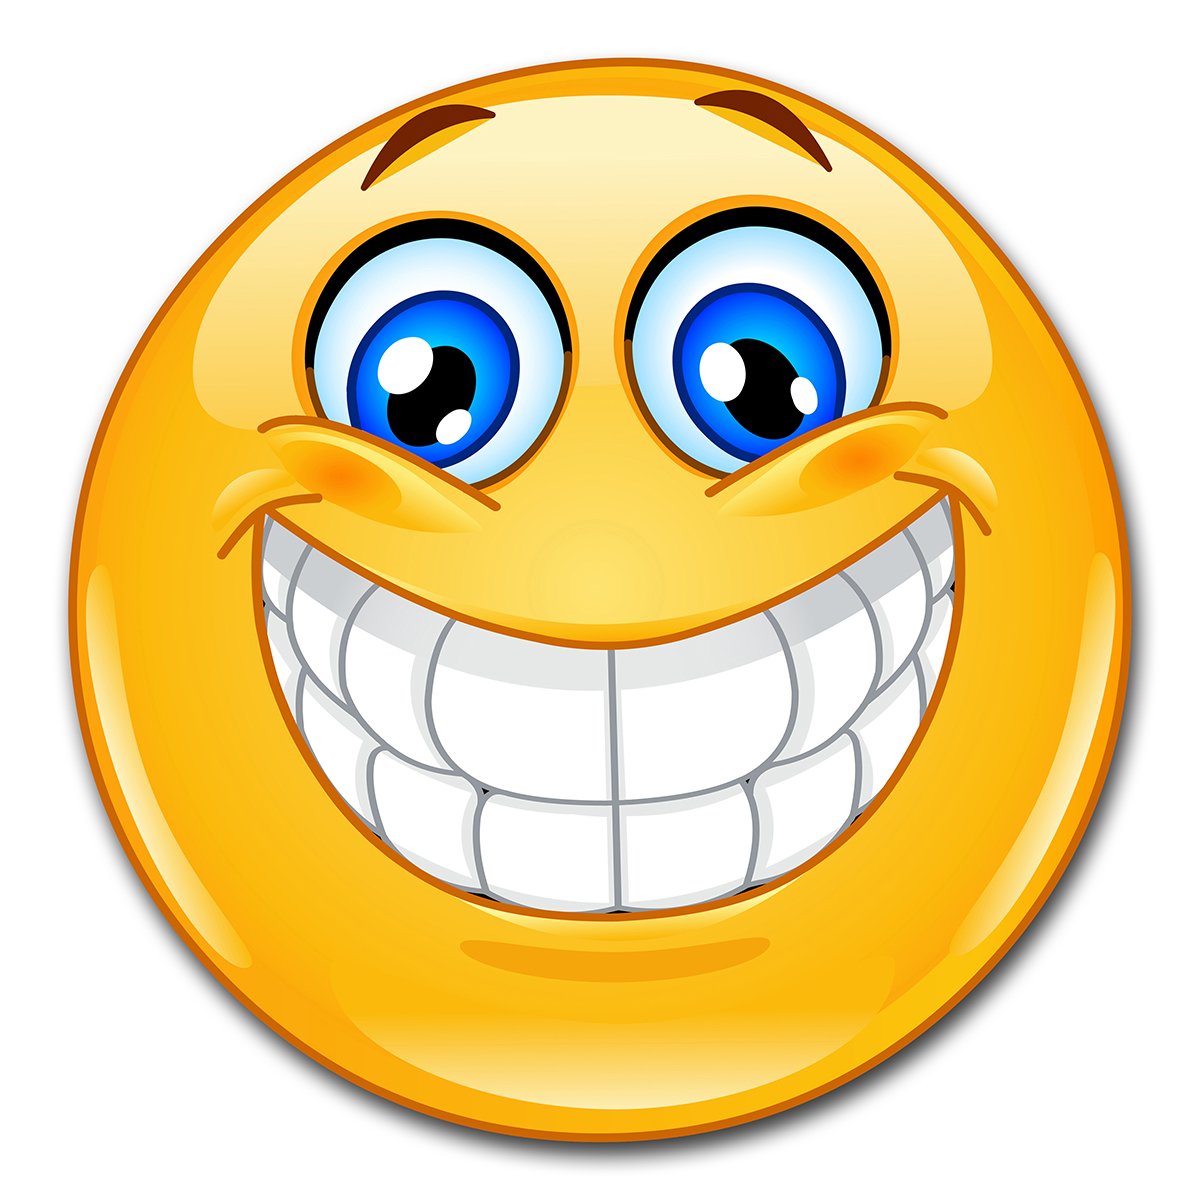 easydruck24de 1 Smiley-Aufkleber Smile XL I kfz_298 I rund Ø 20 cm I Emoticon Sticker lachend für Auto Wohnwagen Wohnmobil Wand-Tattoo I wetterfest von easydruck24de